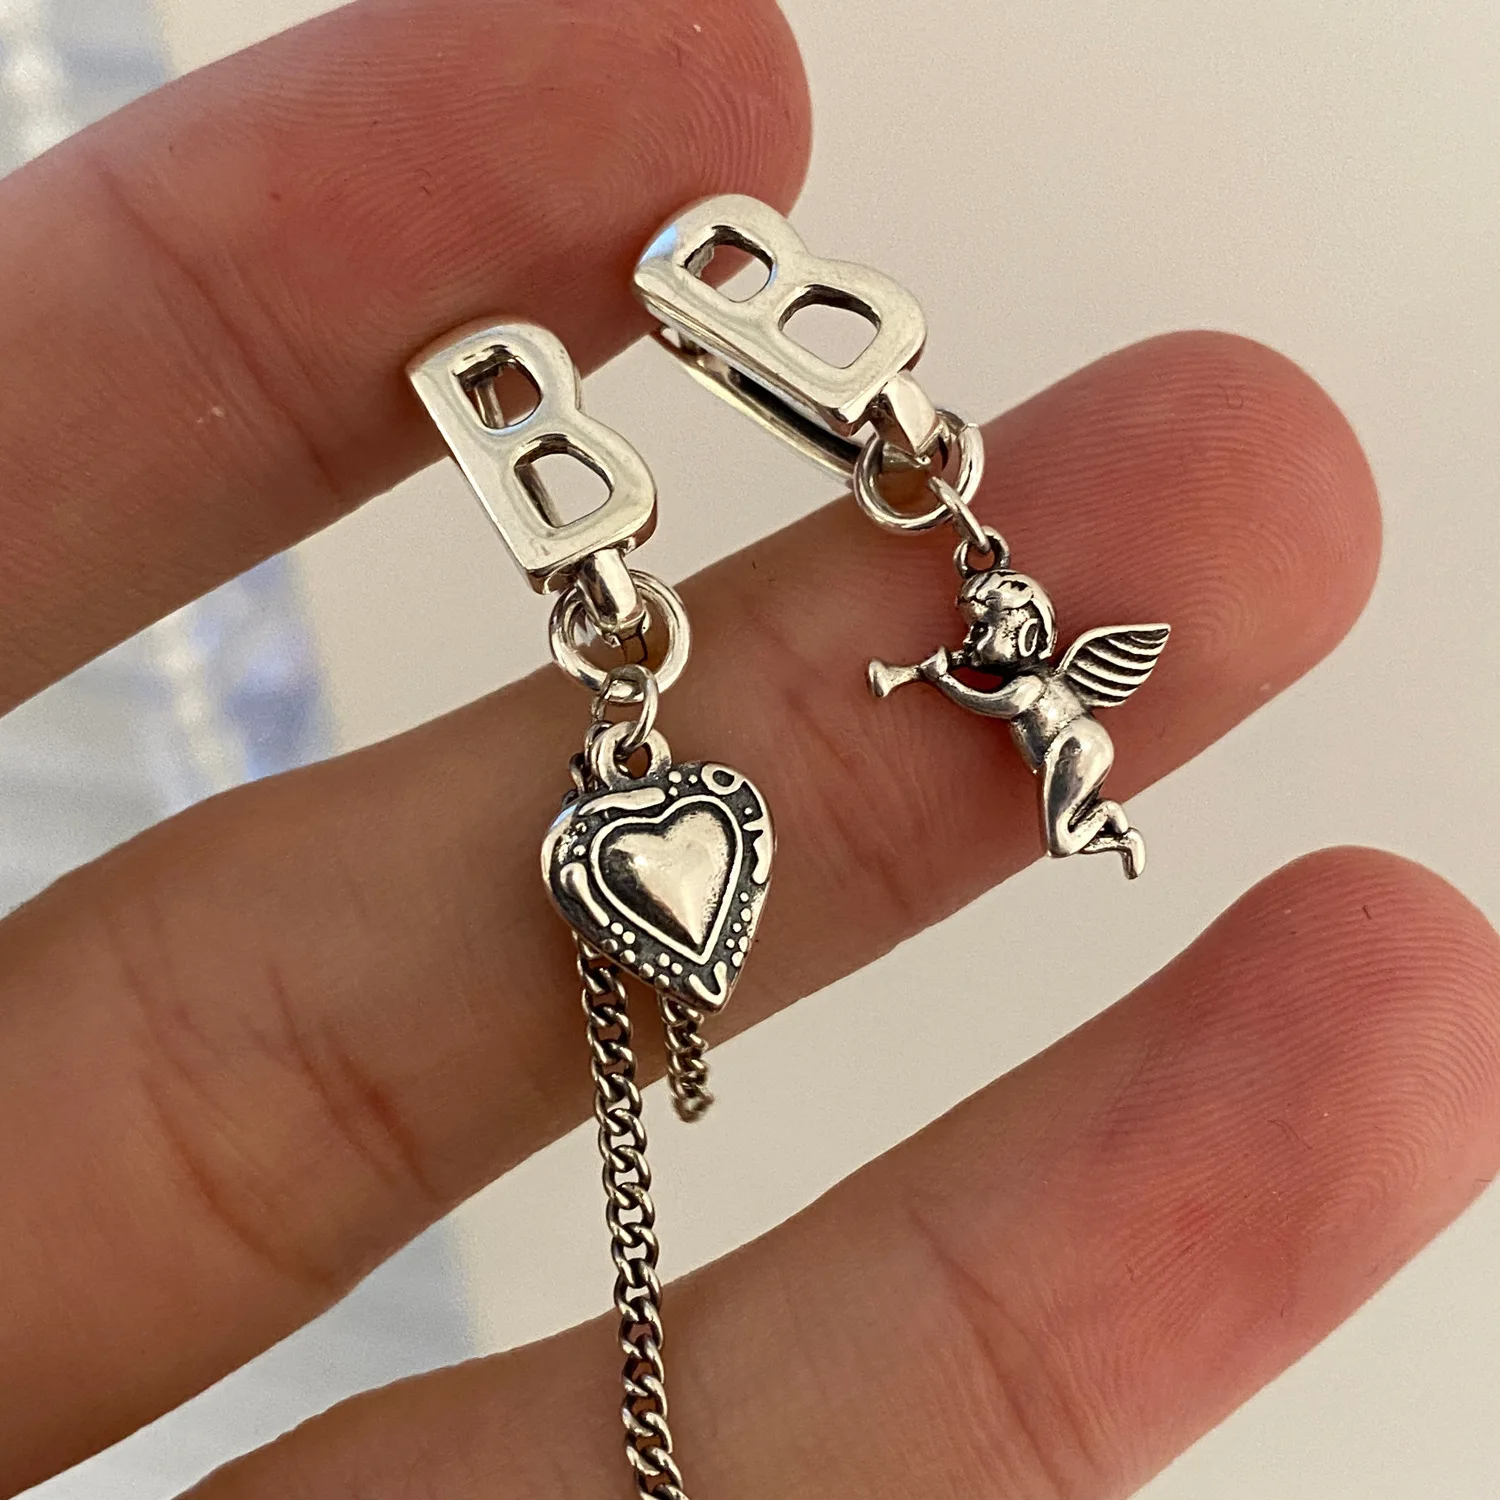 

FMILY Minimalist Angel Earrings Retro 925 Sterling Silver New Asymmetric Tassel Hip Hop Punk Jewelry for Girlfriend Gifts